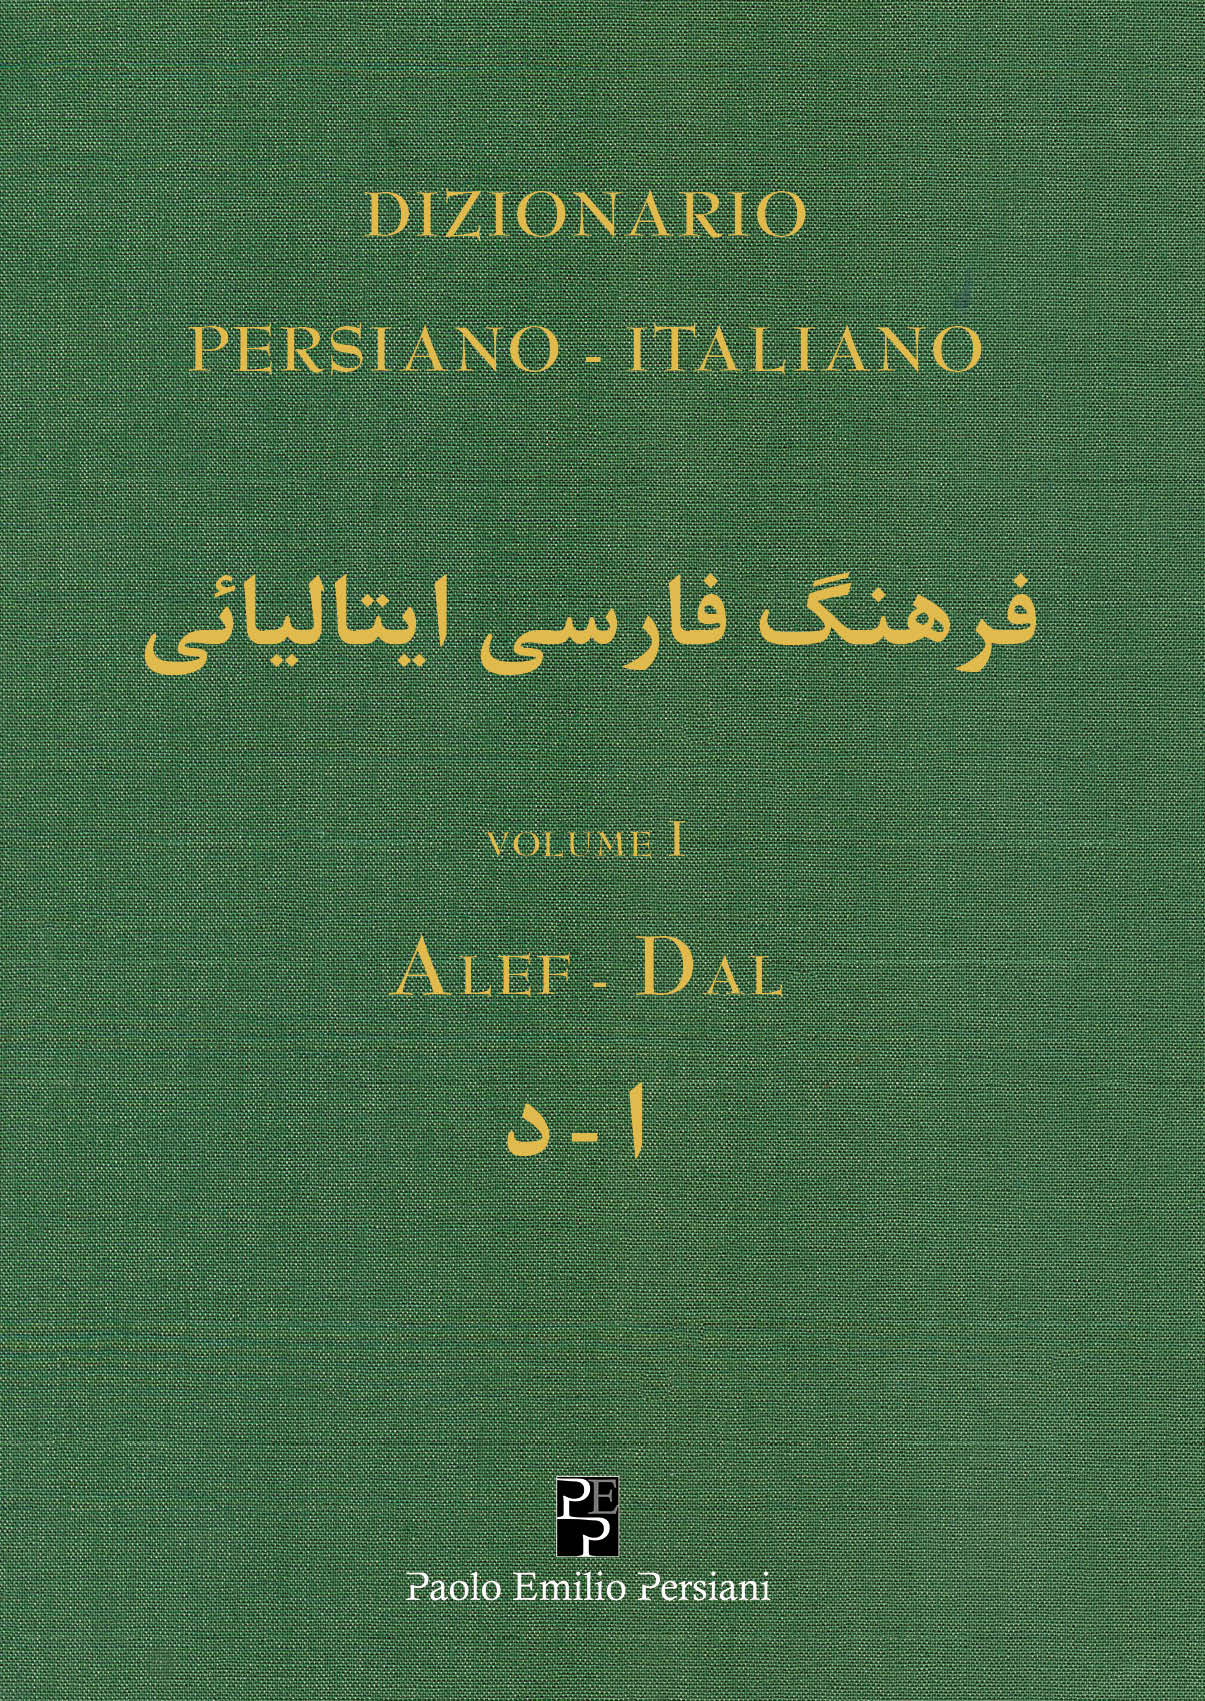 Presentazione del “Dizionario Persiano Italiano” Giovedì 2 marzo